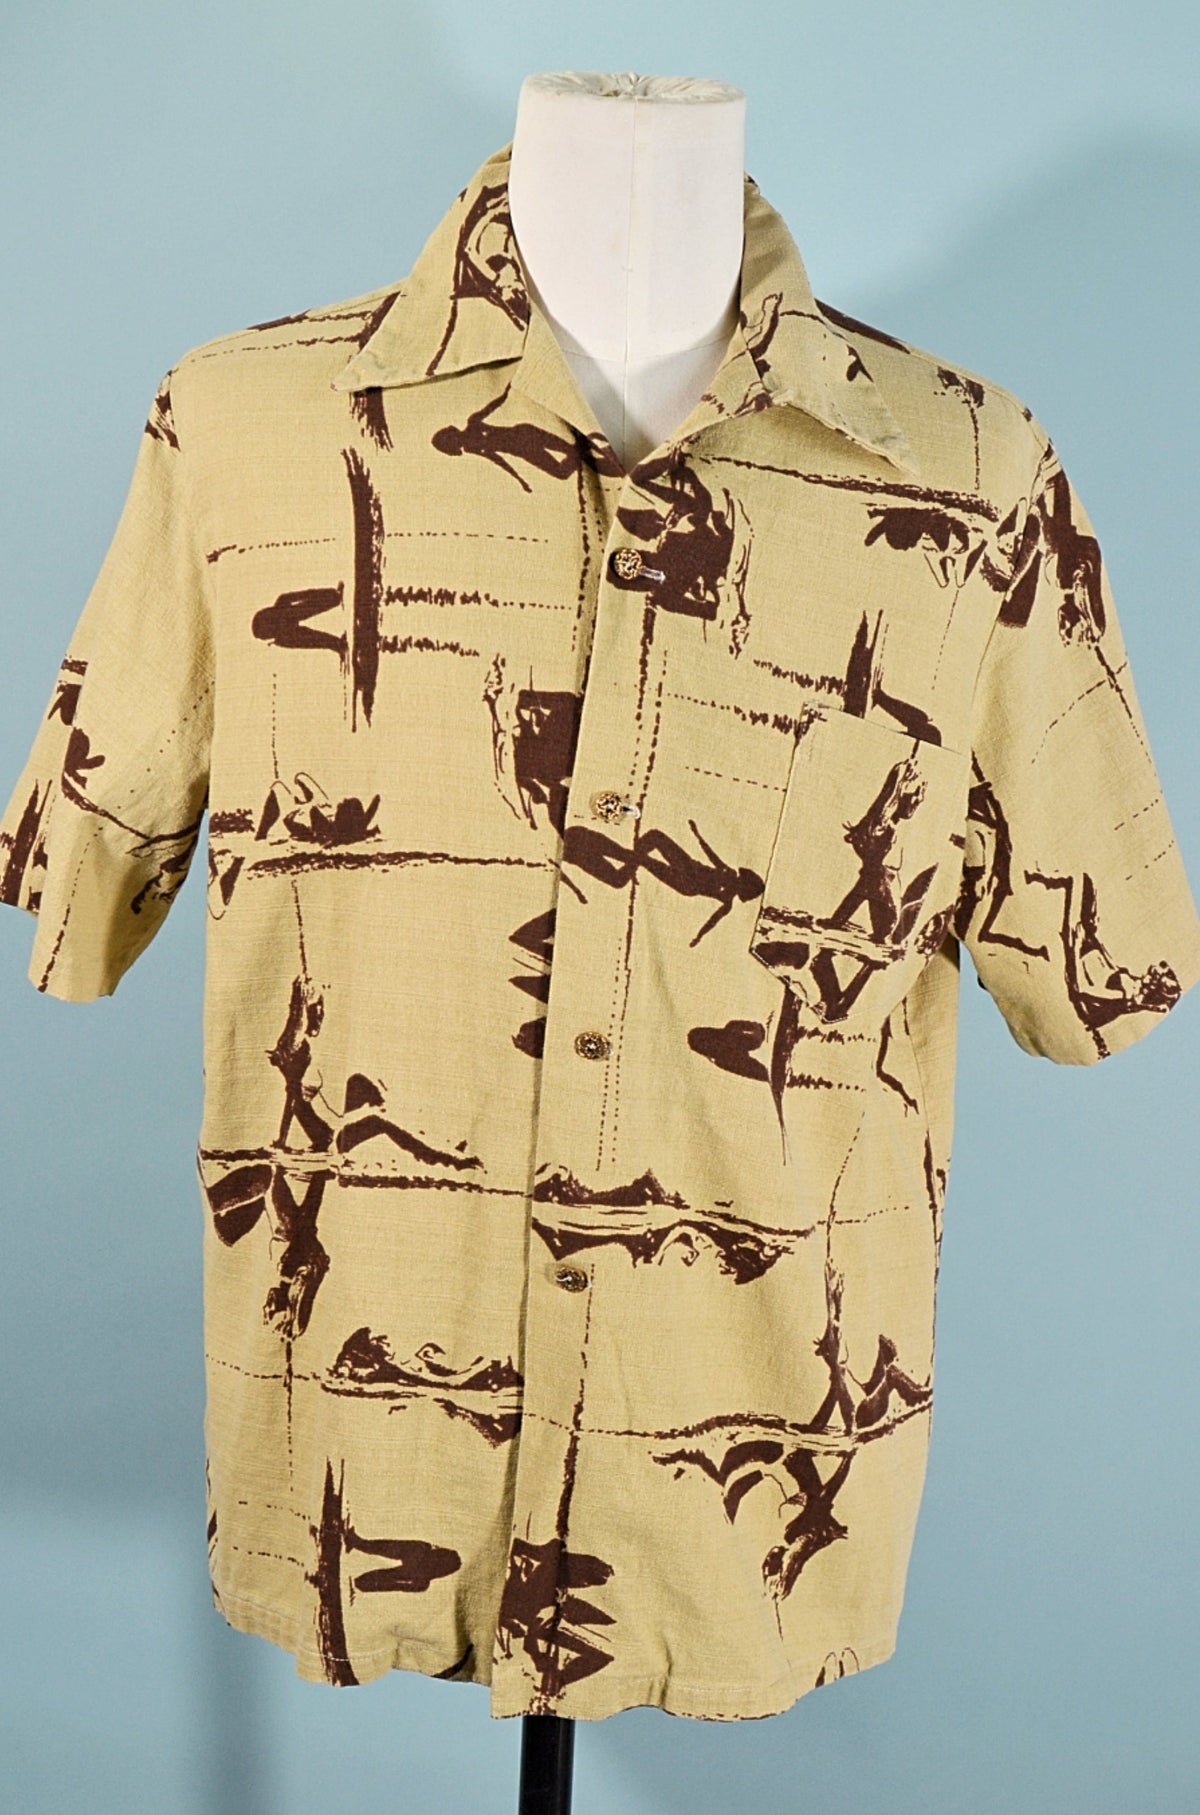 Hawaiian Shirts For Women, Summers Best Print Trend